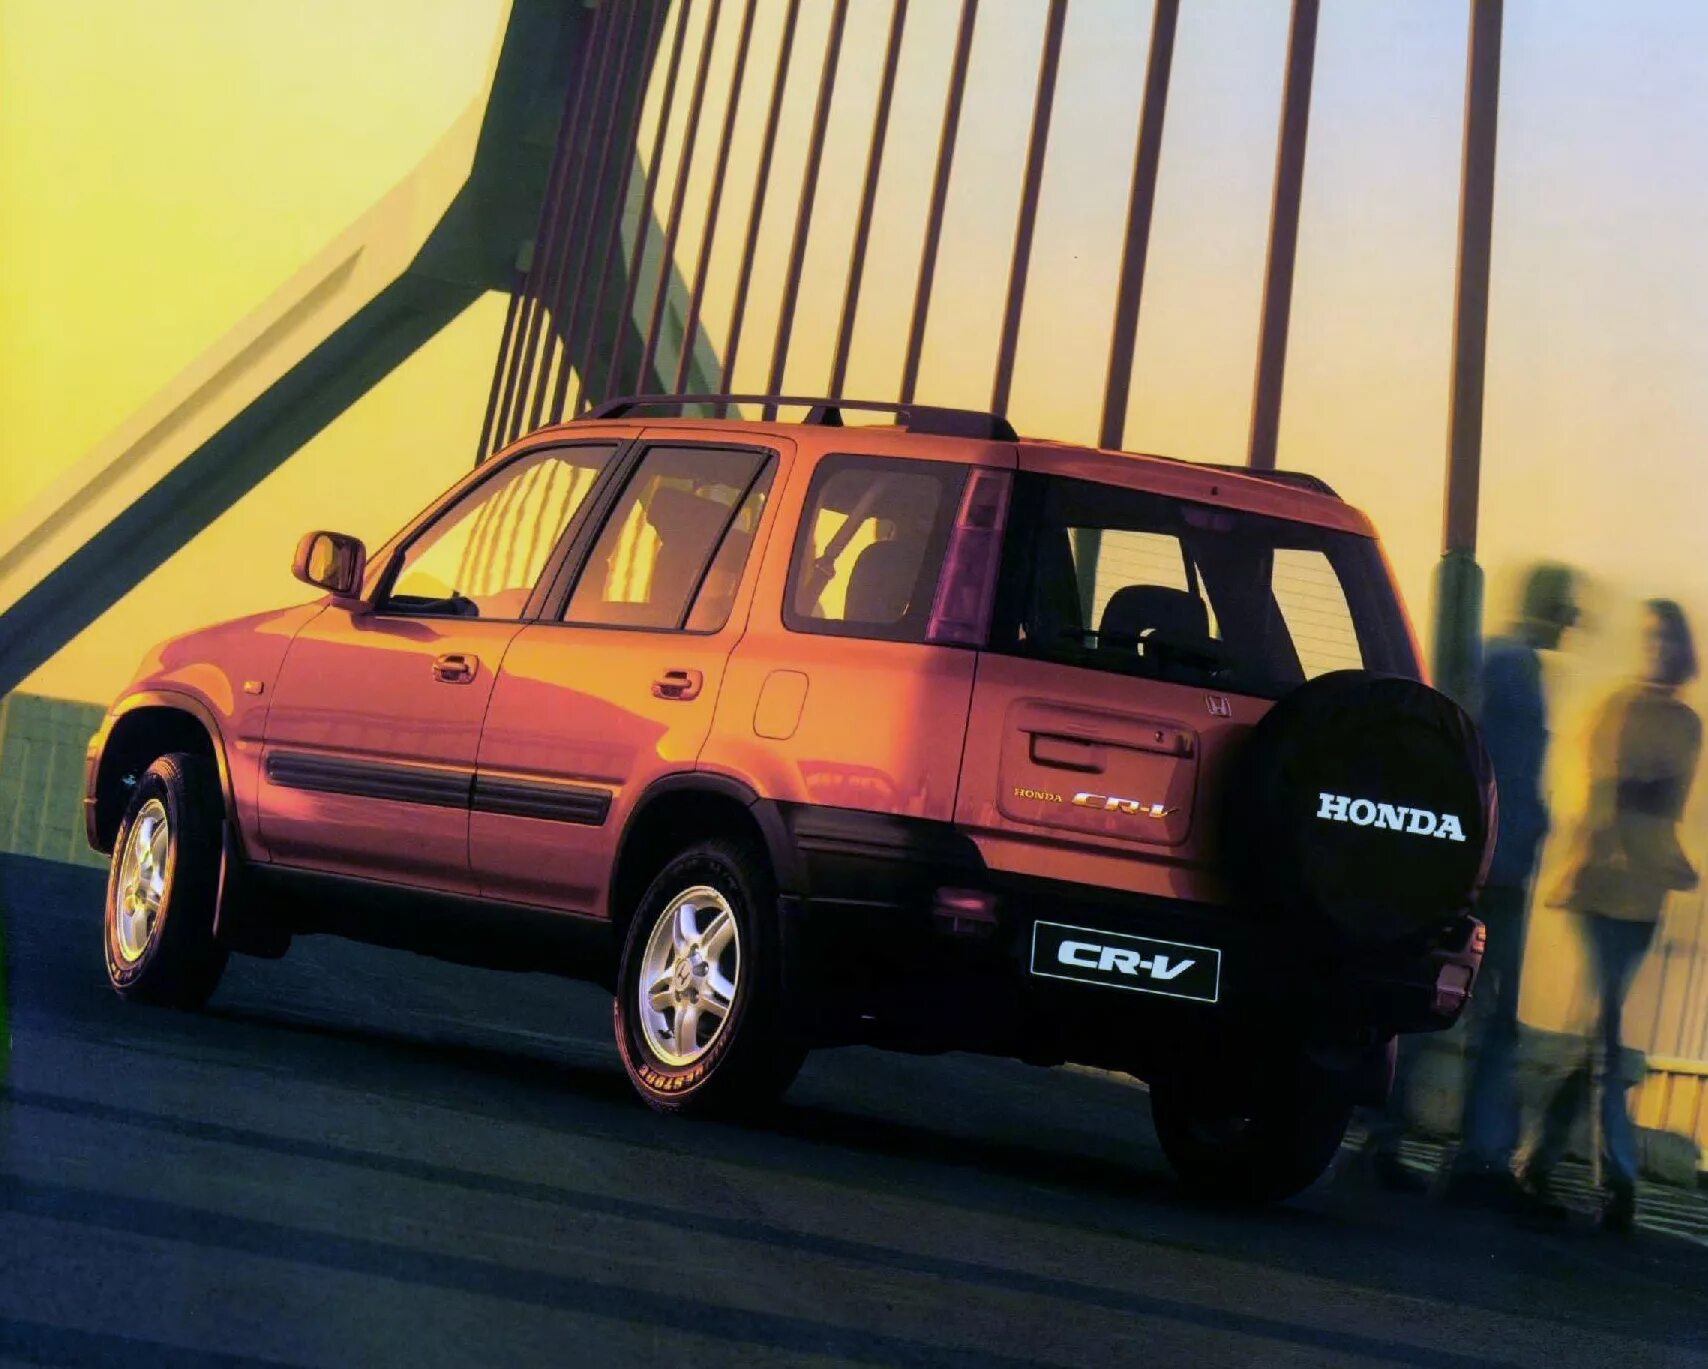 Honda crv 1 поколение. Honda CR-V 1 поколение. Honda CRV mk1. CRV 1 поколения. Офроуд Honda CR-V 1 поколения.